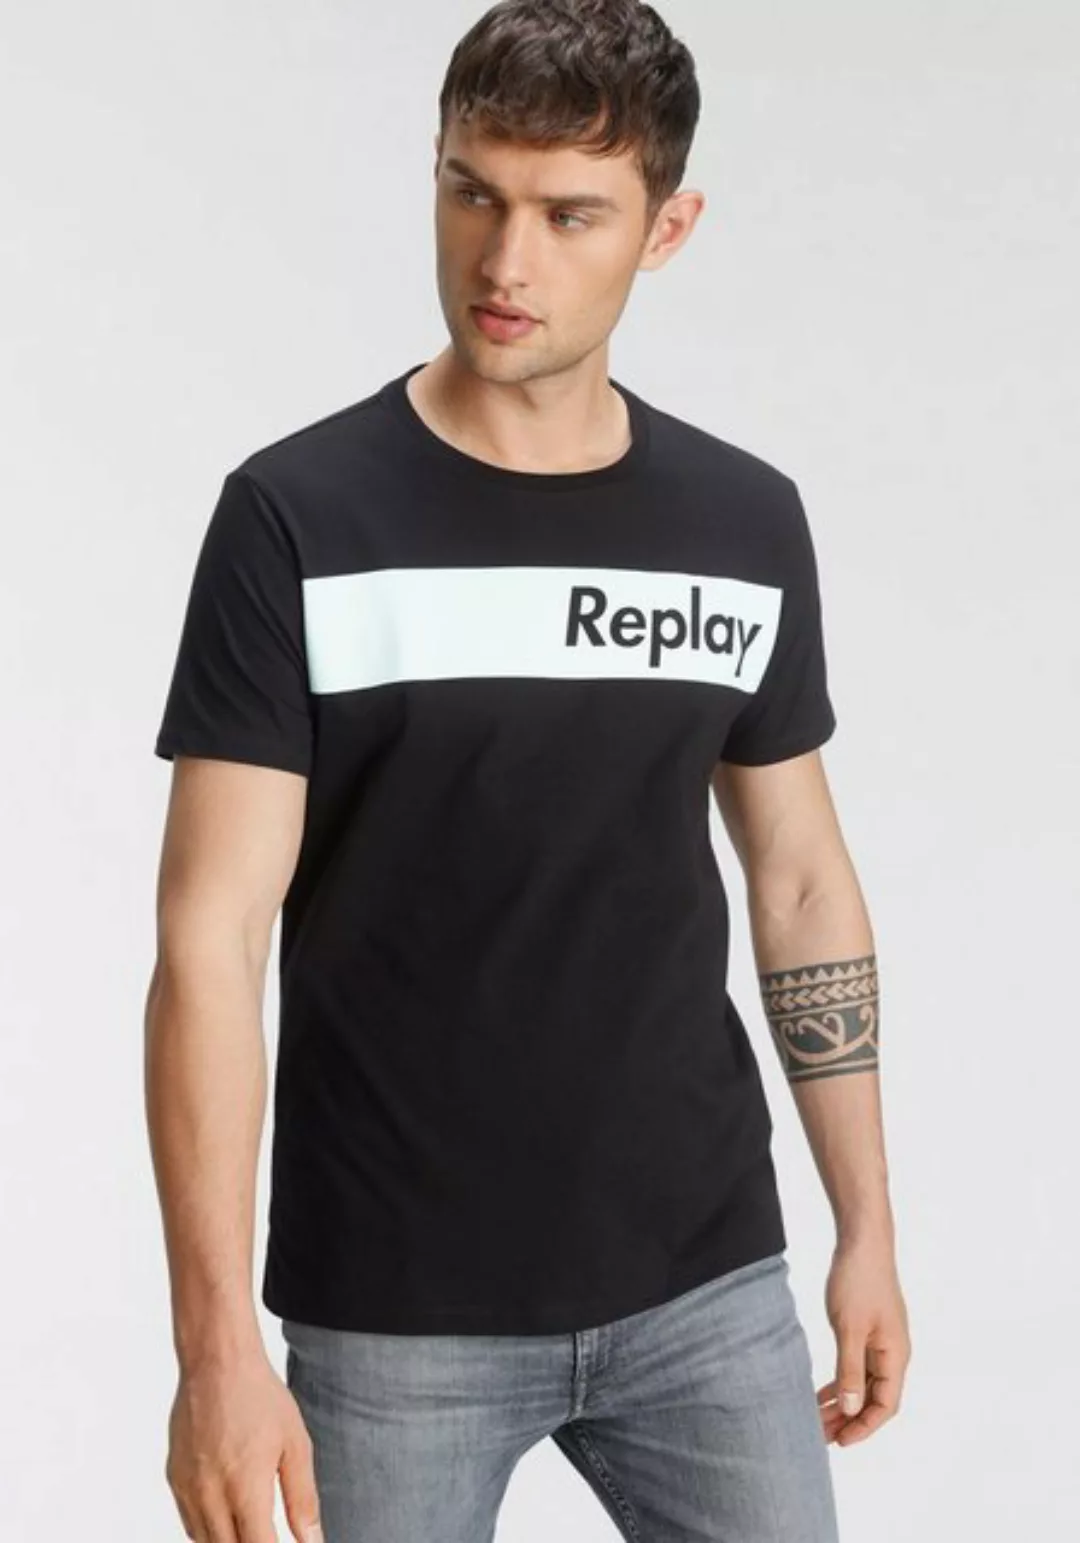 Replay T-Shirt mit Logoprint günstig online kaufen